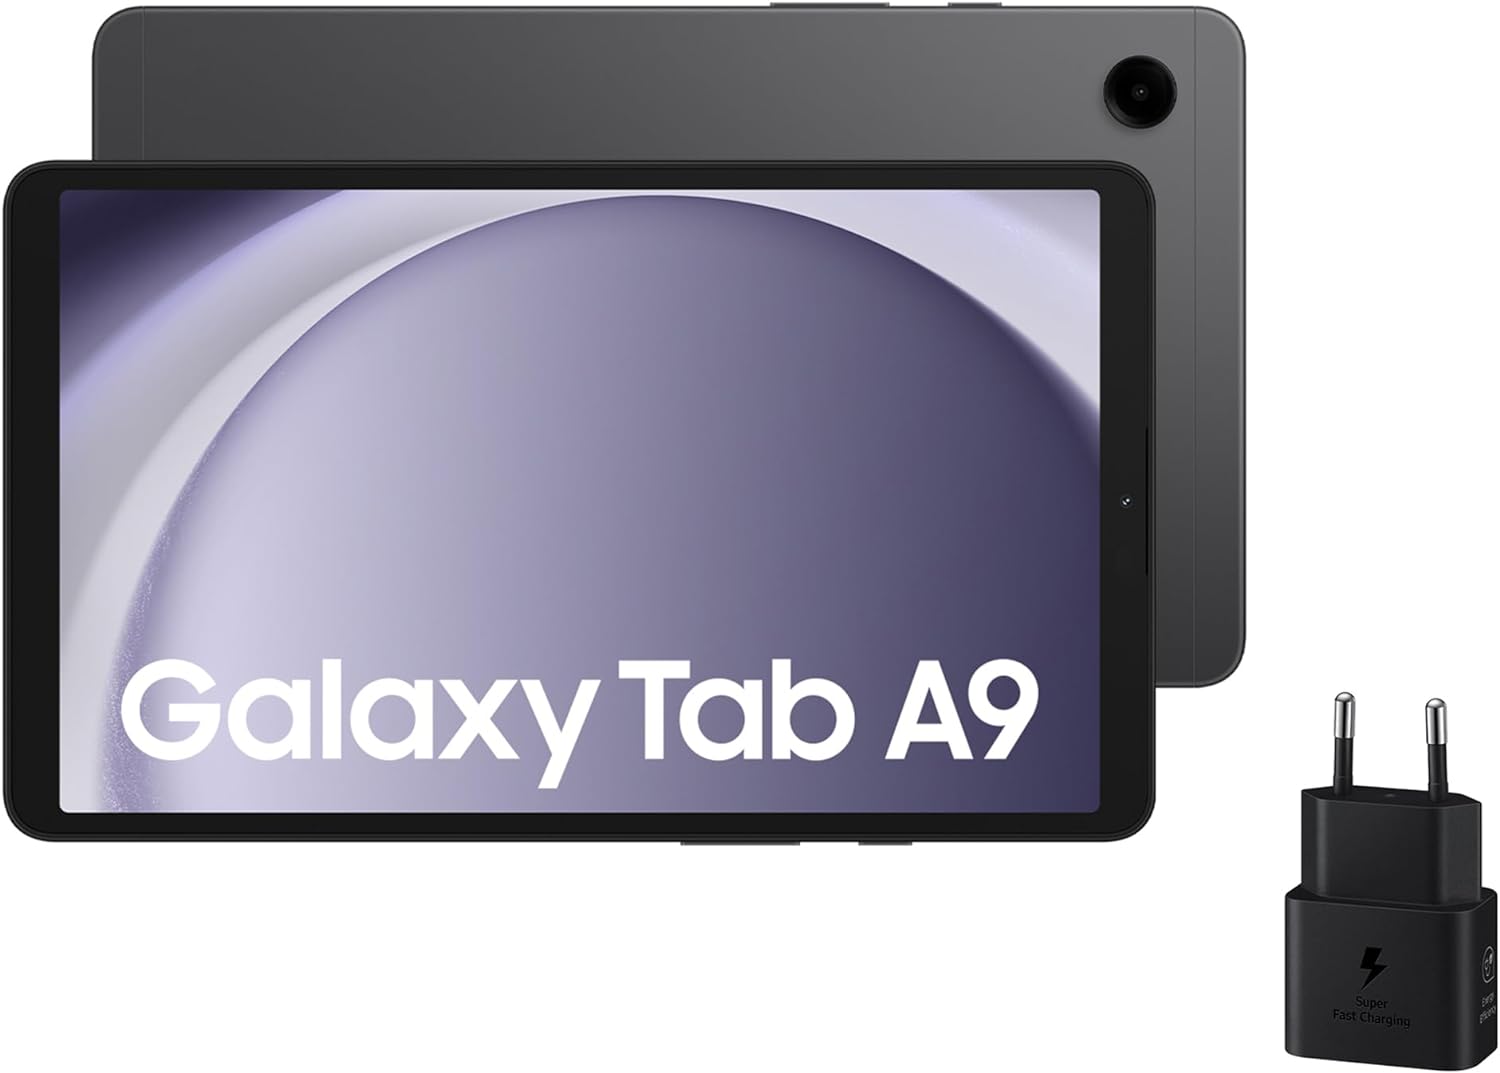 Samsung Galaxy Tab A9 vs Samsung Galaxy Tab A8